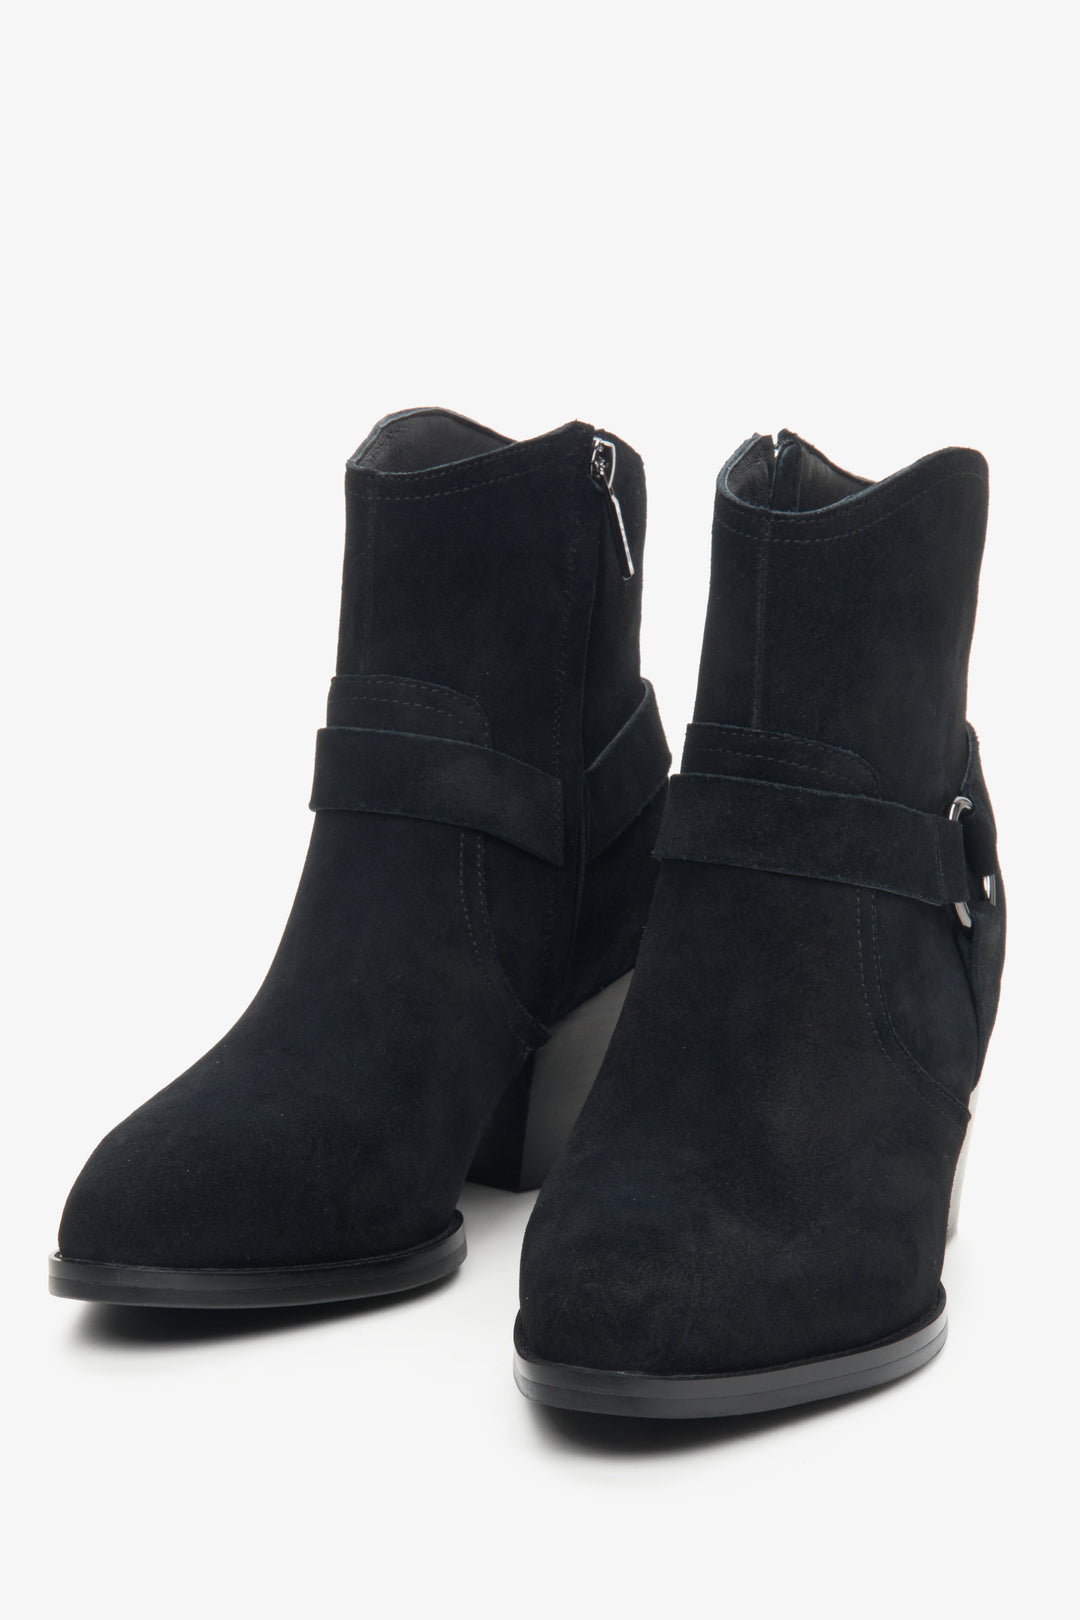 Women's short black suede cowboy boots by Estro.